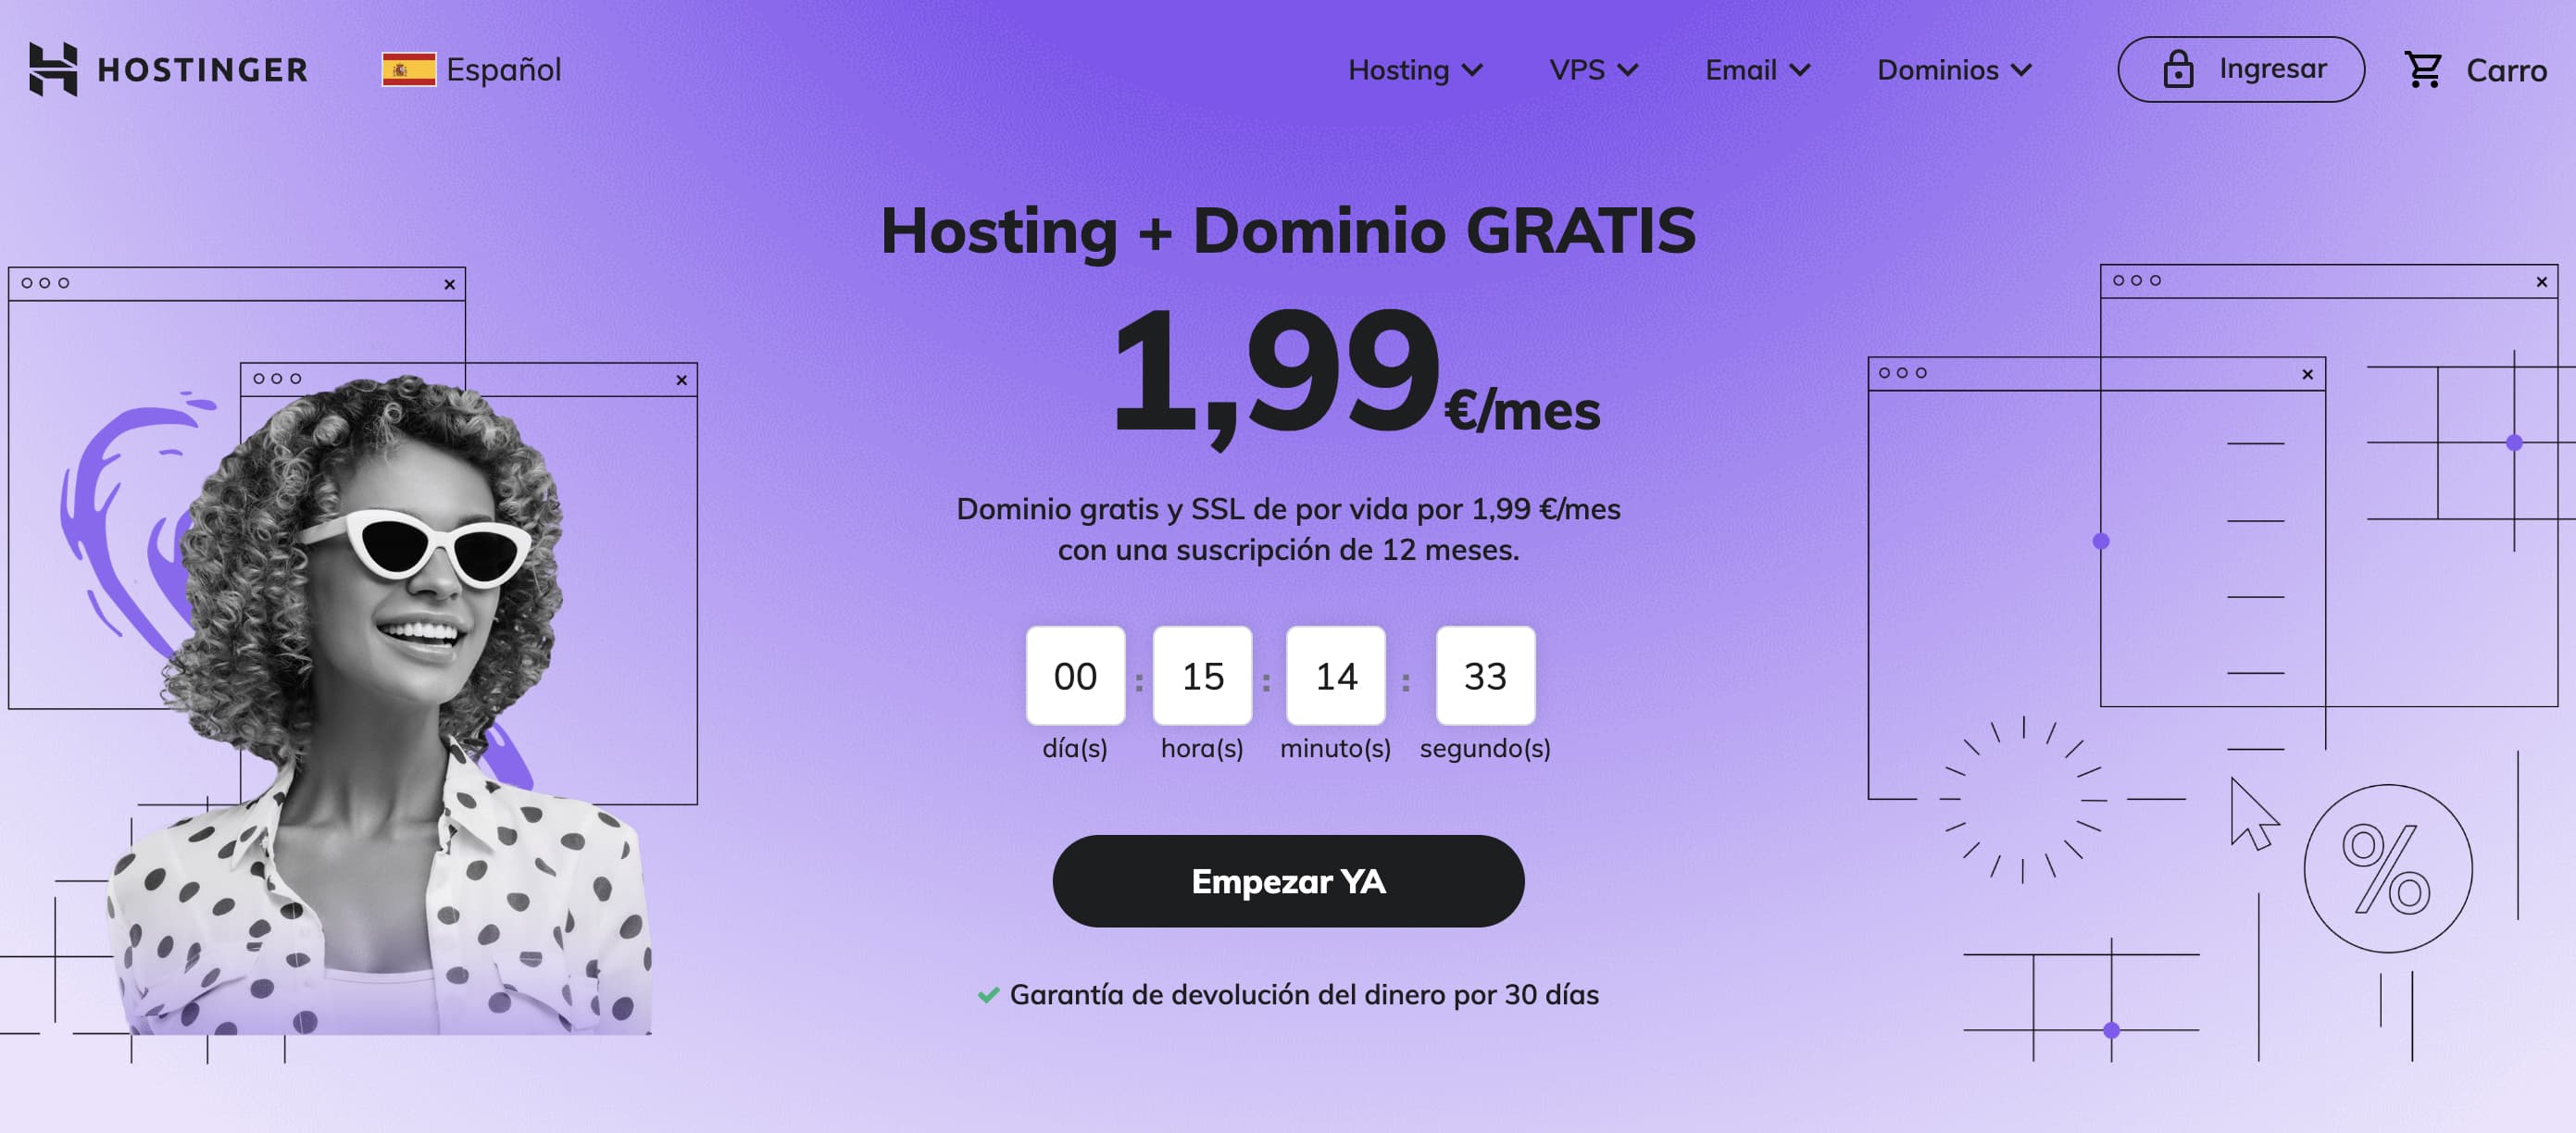 Dónde comprar un dominio y hosting: Hostinger